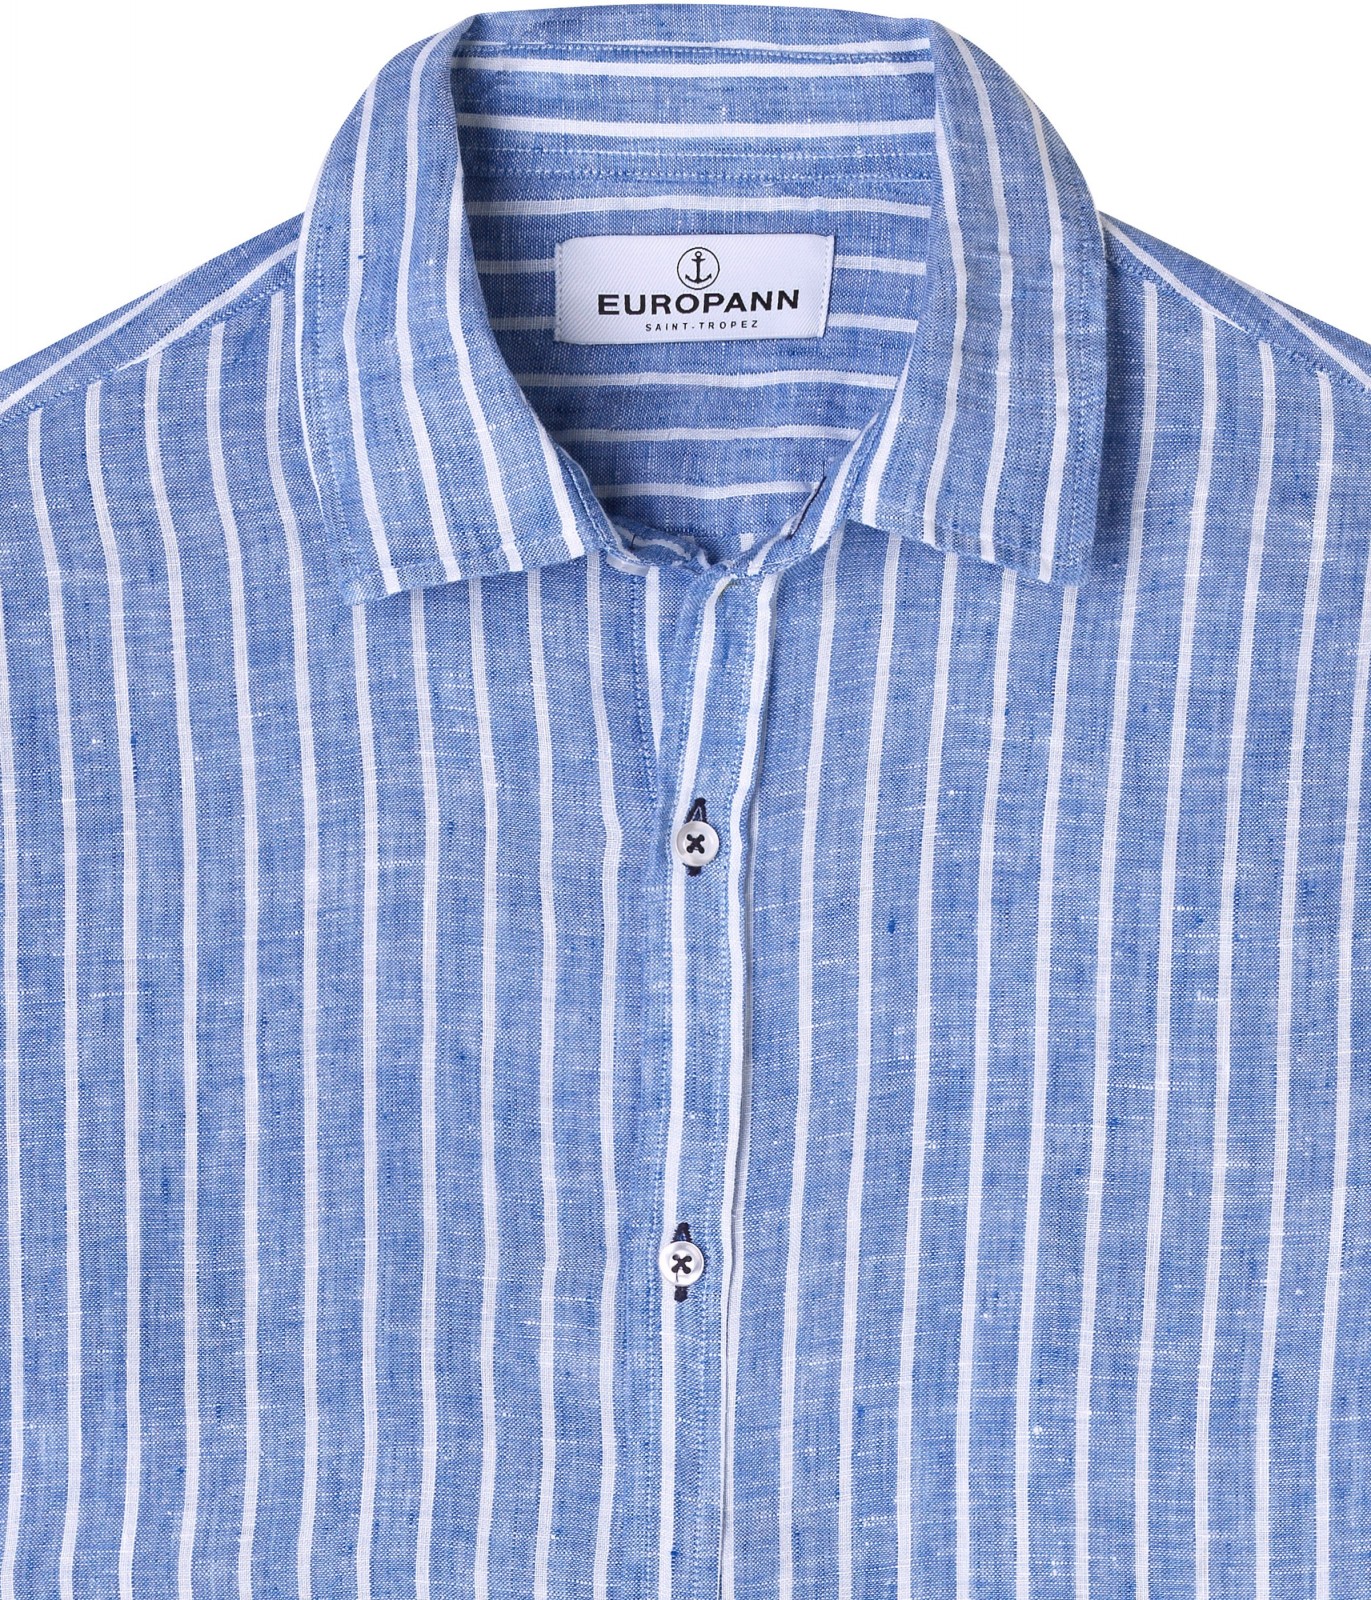 https://www.europann.com/5872-thickbox_default/tennis-linen-striped-shirt-blue.jpg